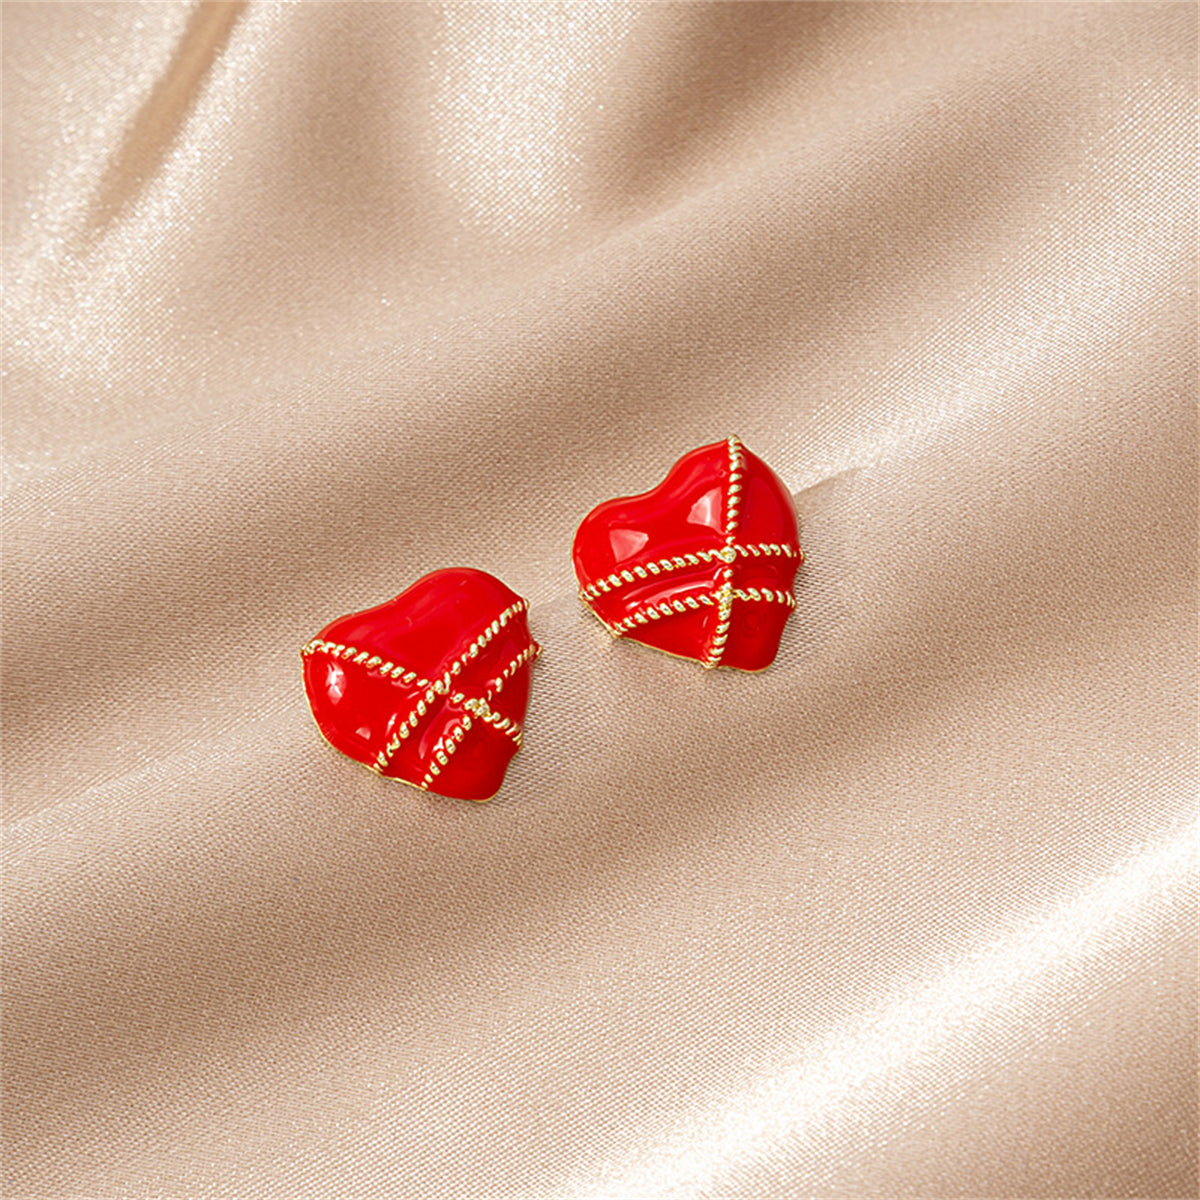 Red Enamel & 18K Gold-Plated Striped Heart Stud Earrings